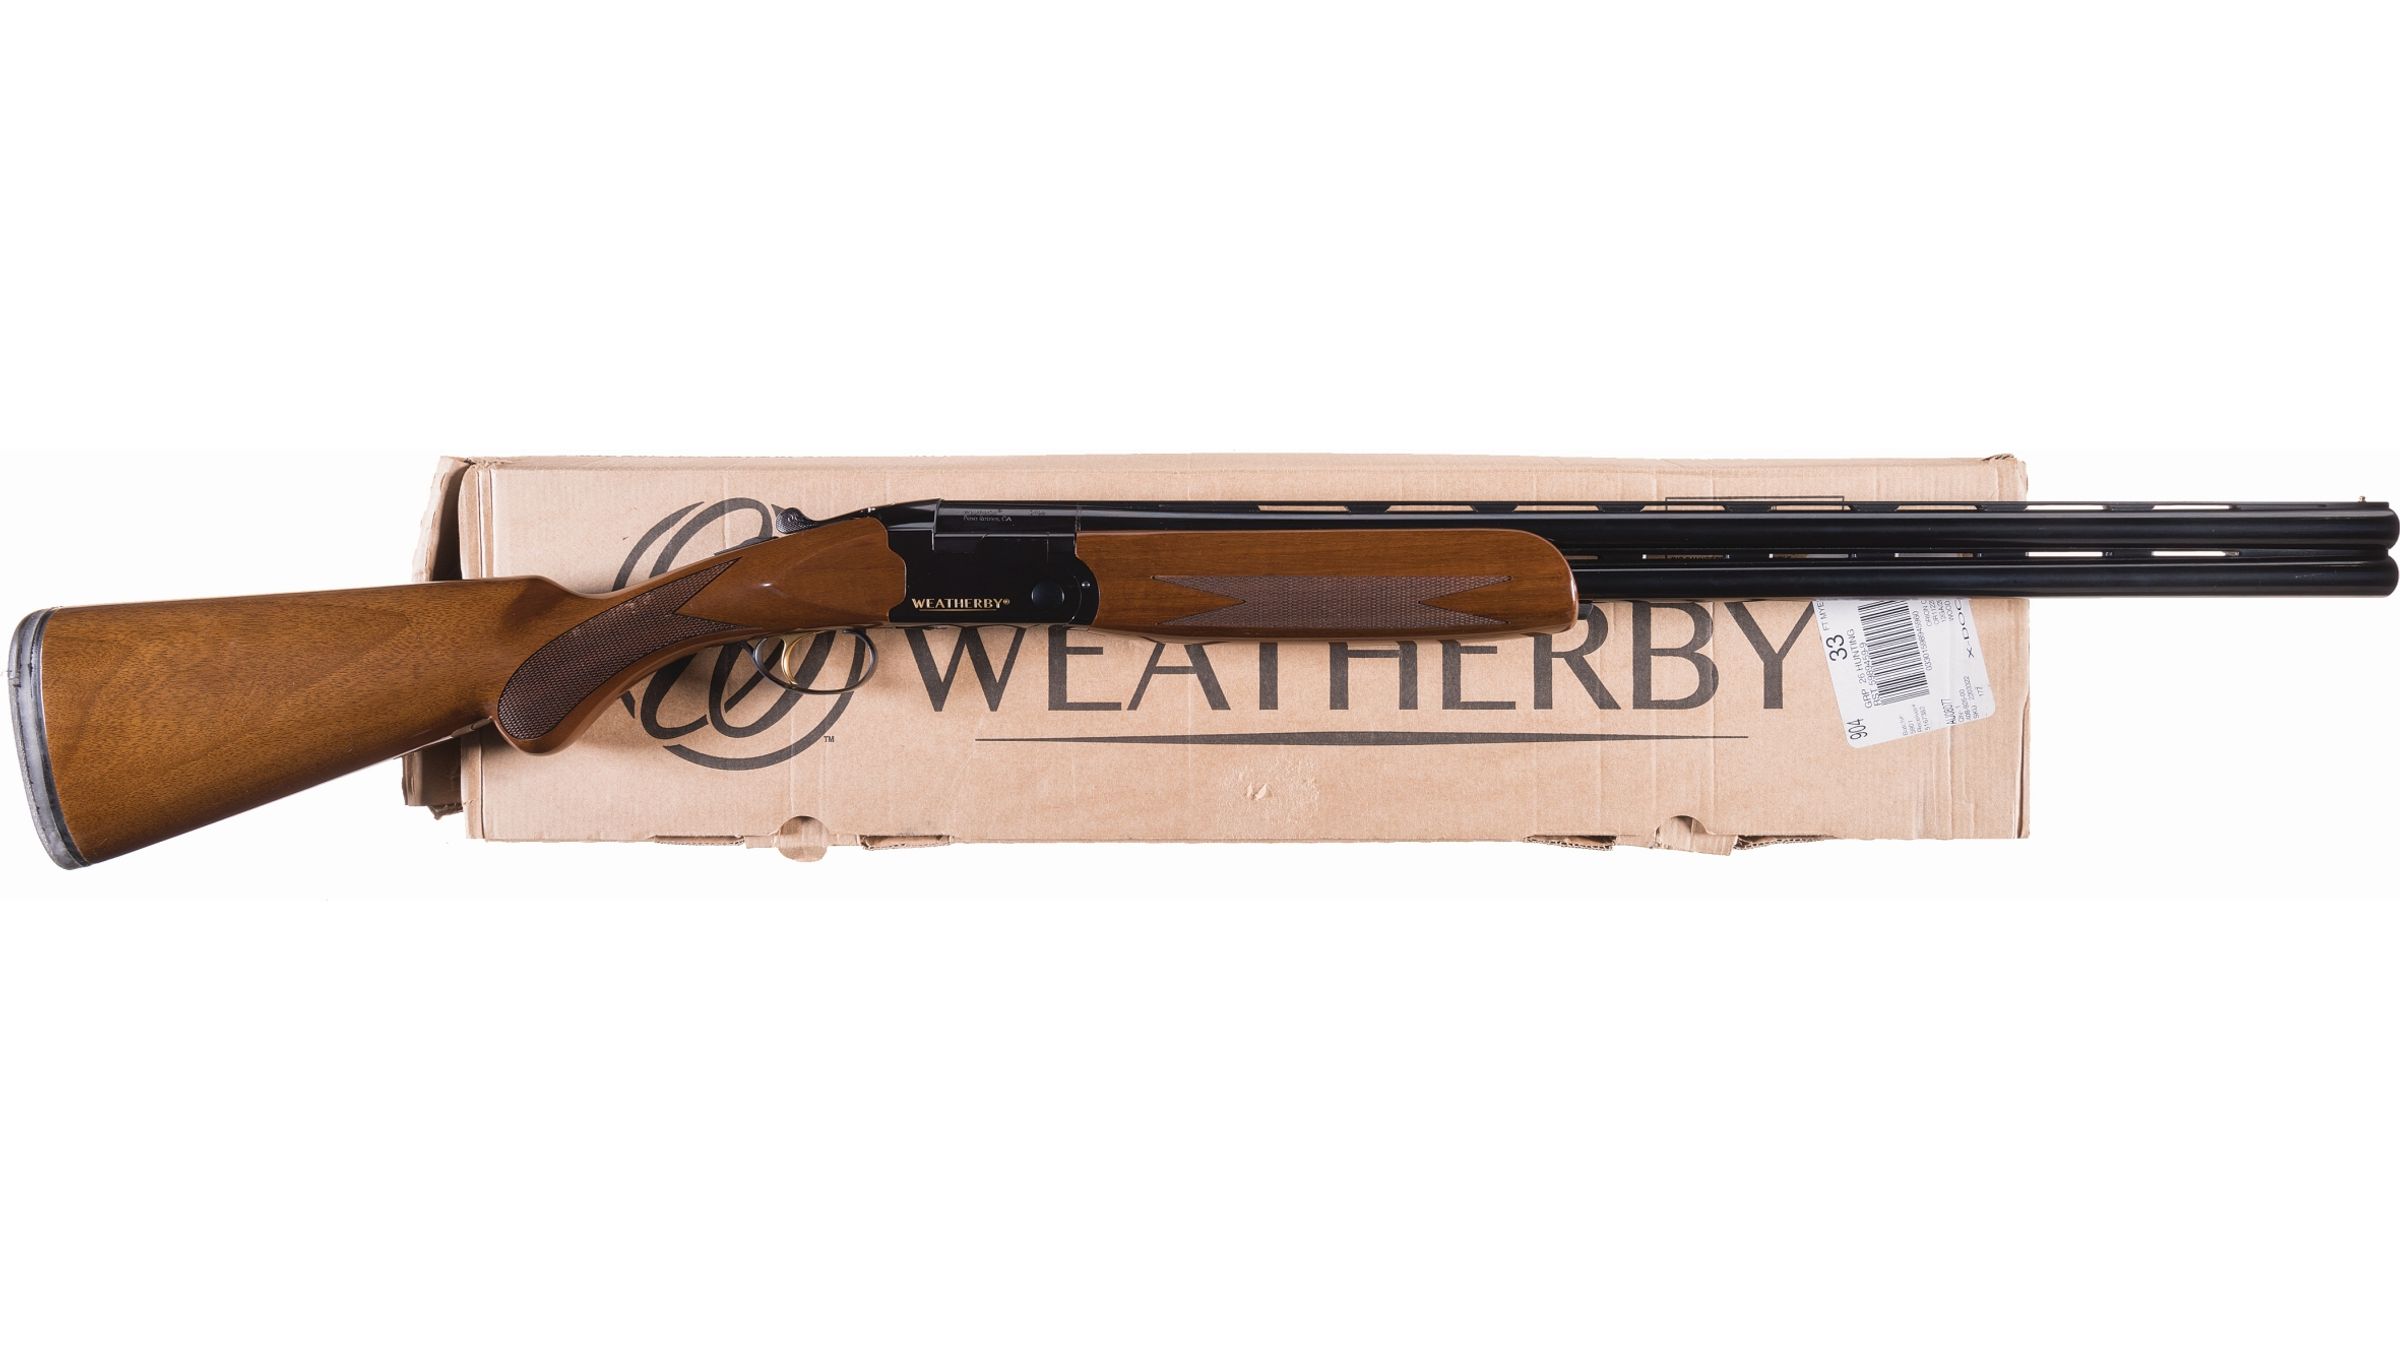 Weatherby orion shotgun serial numbers